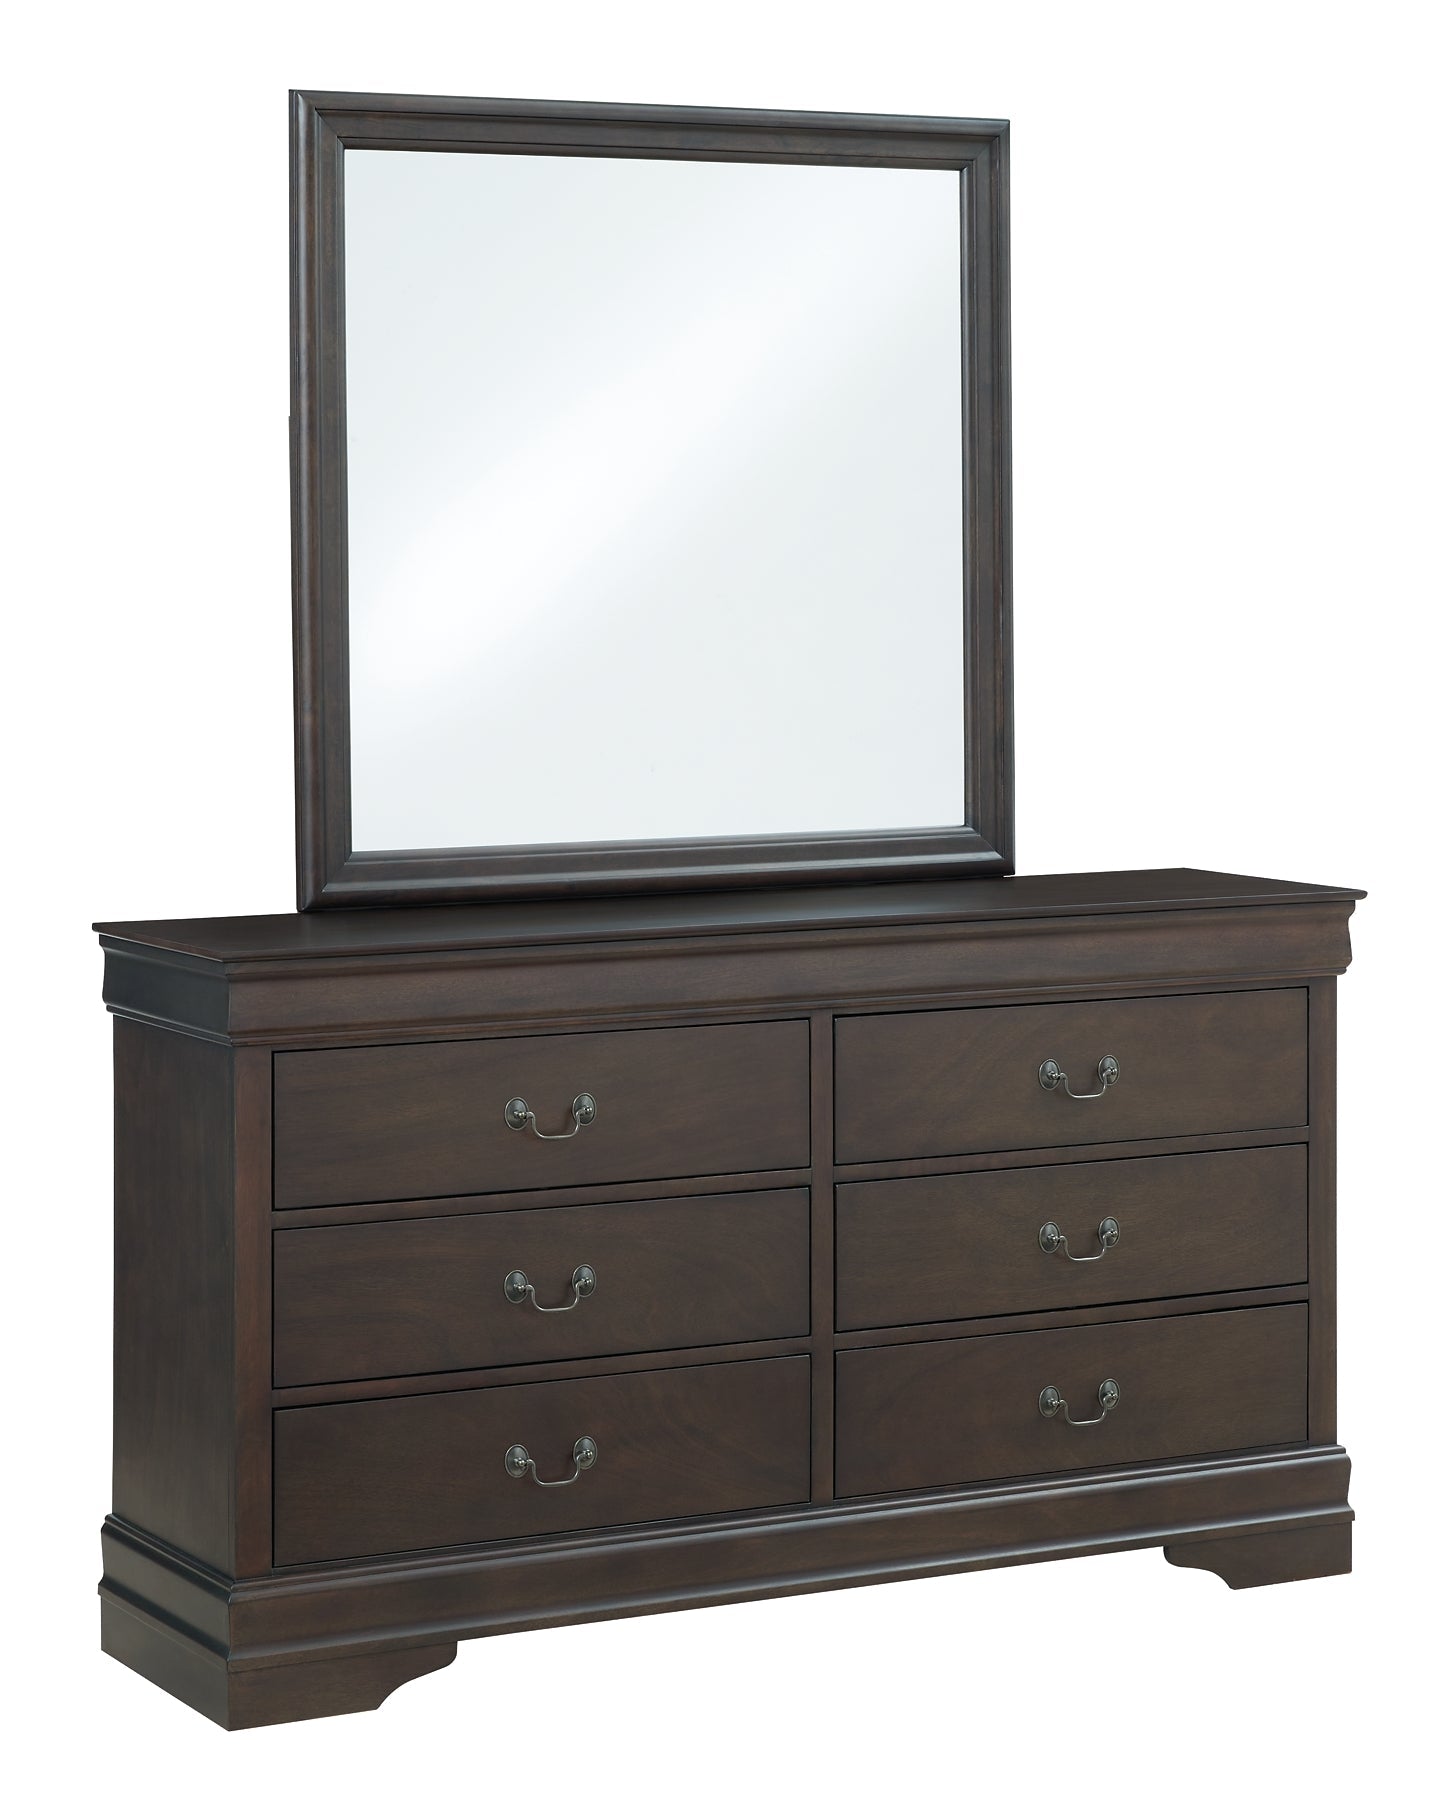 Leewarden Dresser and Mirror